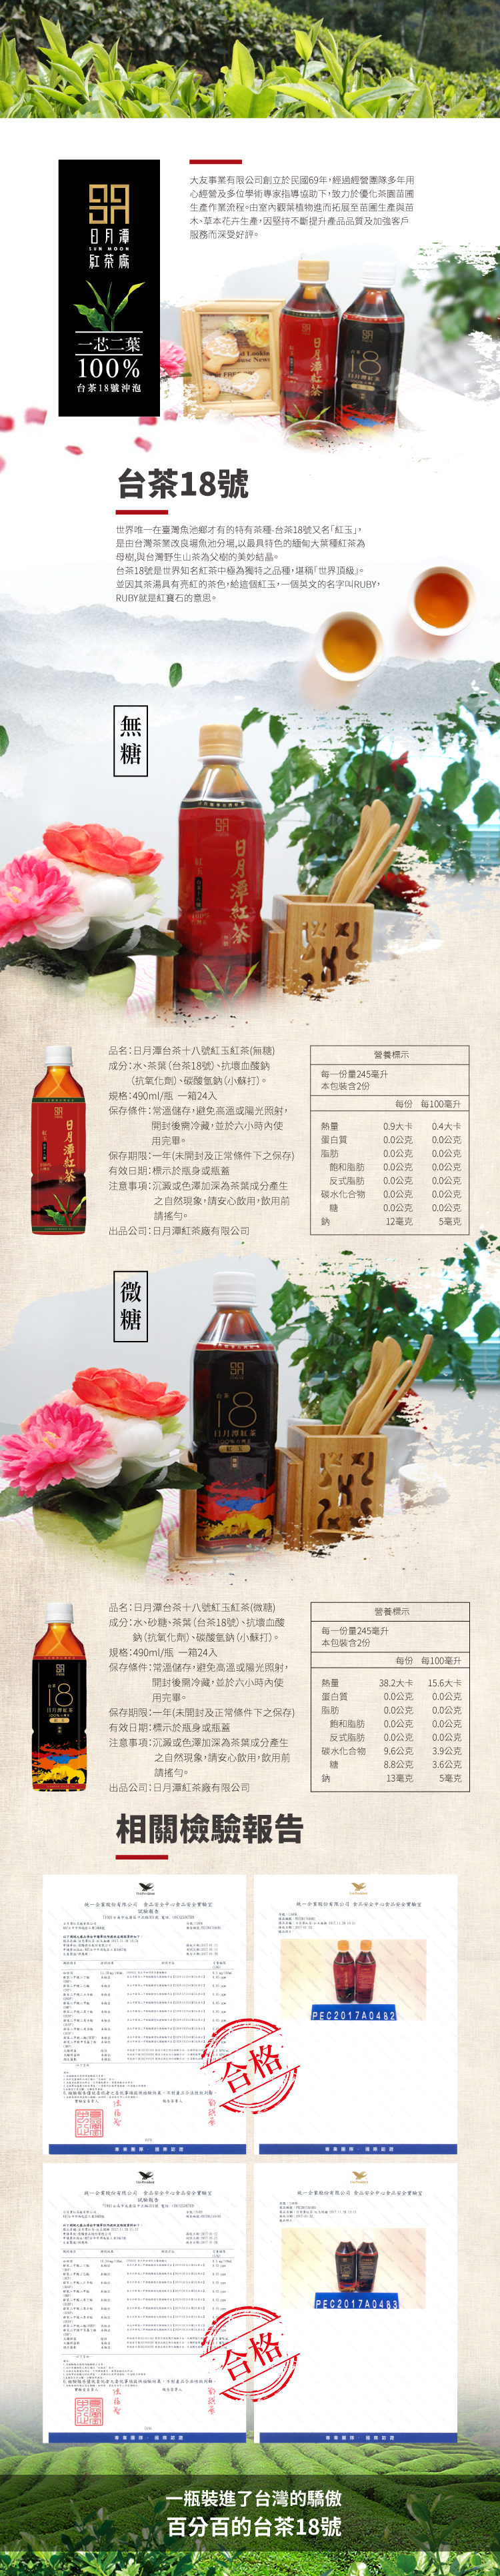 【日月潭紅茶廠】台茶18號紅玉紅茶 490mlX24罐/箱 含糖/無糖